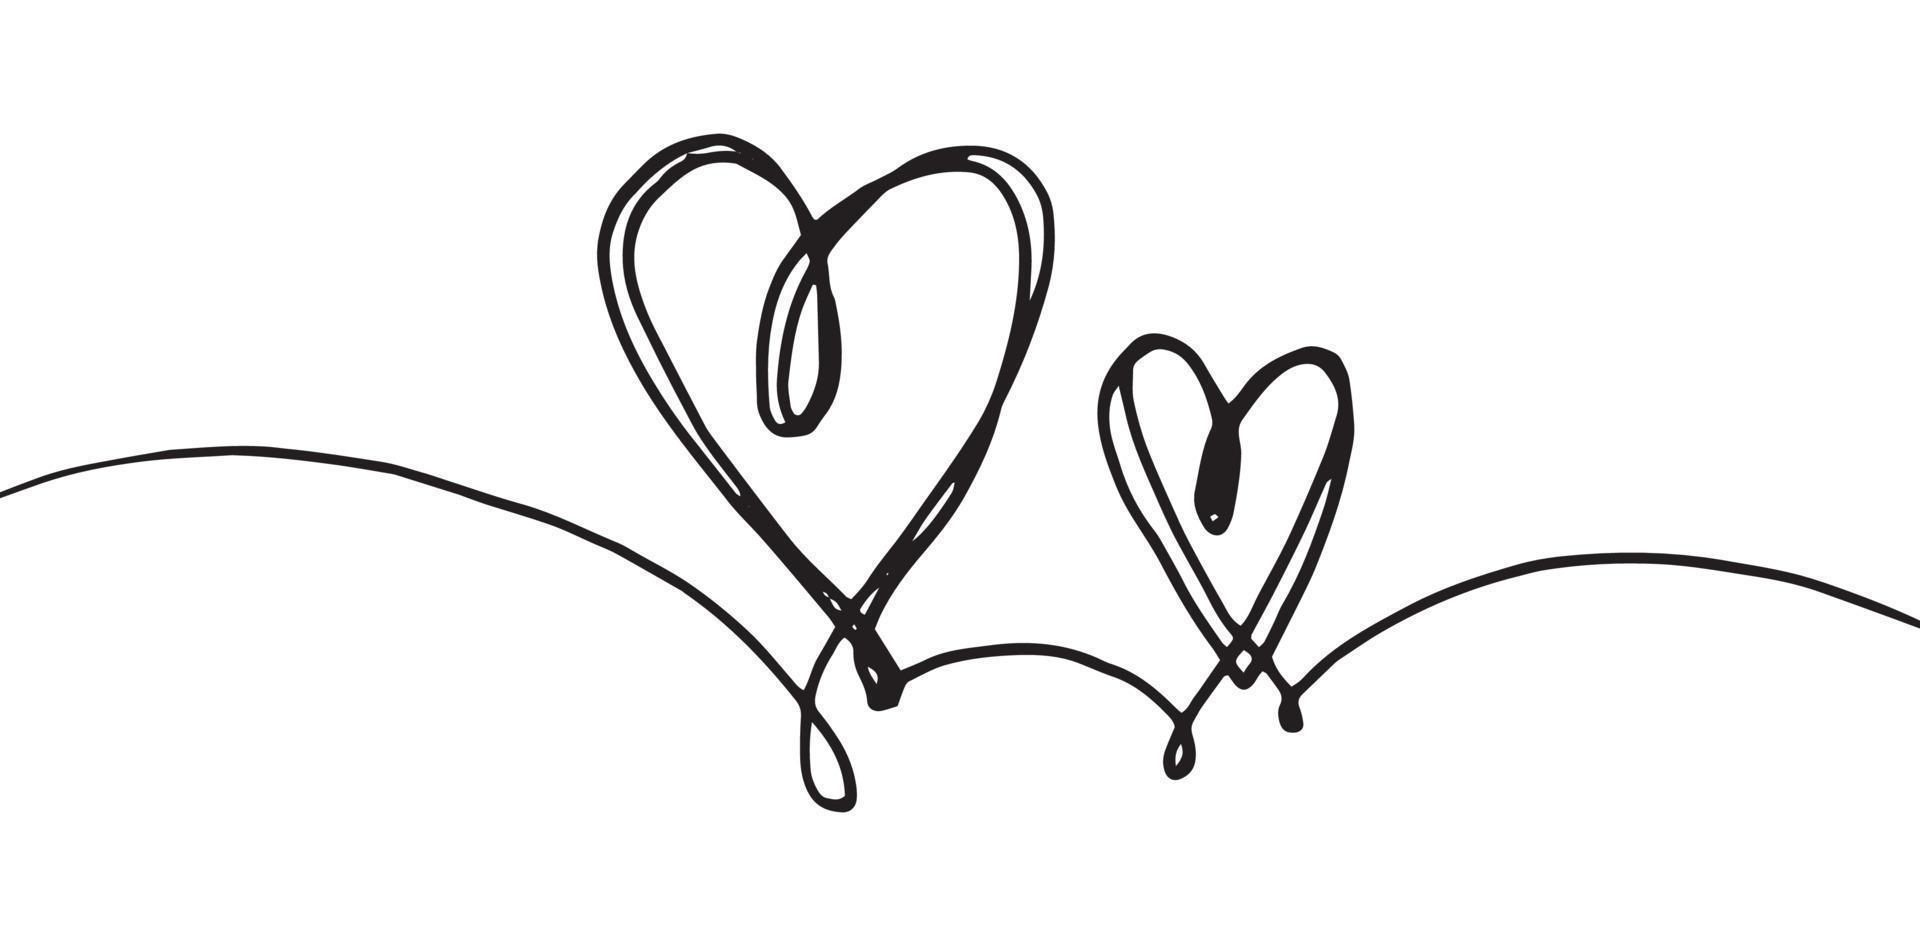 scarabocchi di cuore di grunge sgualciti disegnati a mano con linee sottili, forma divisoria. Isolato su uno sfondo bianco. illustrazione vettoriale